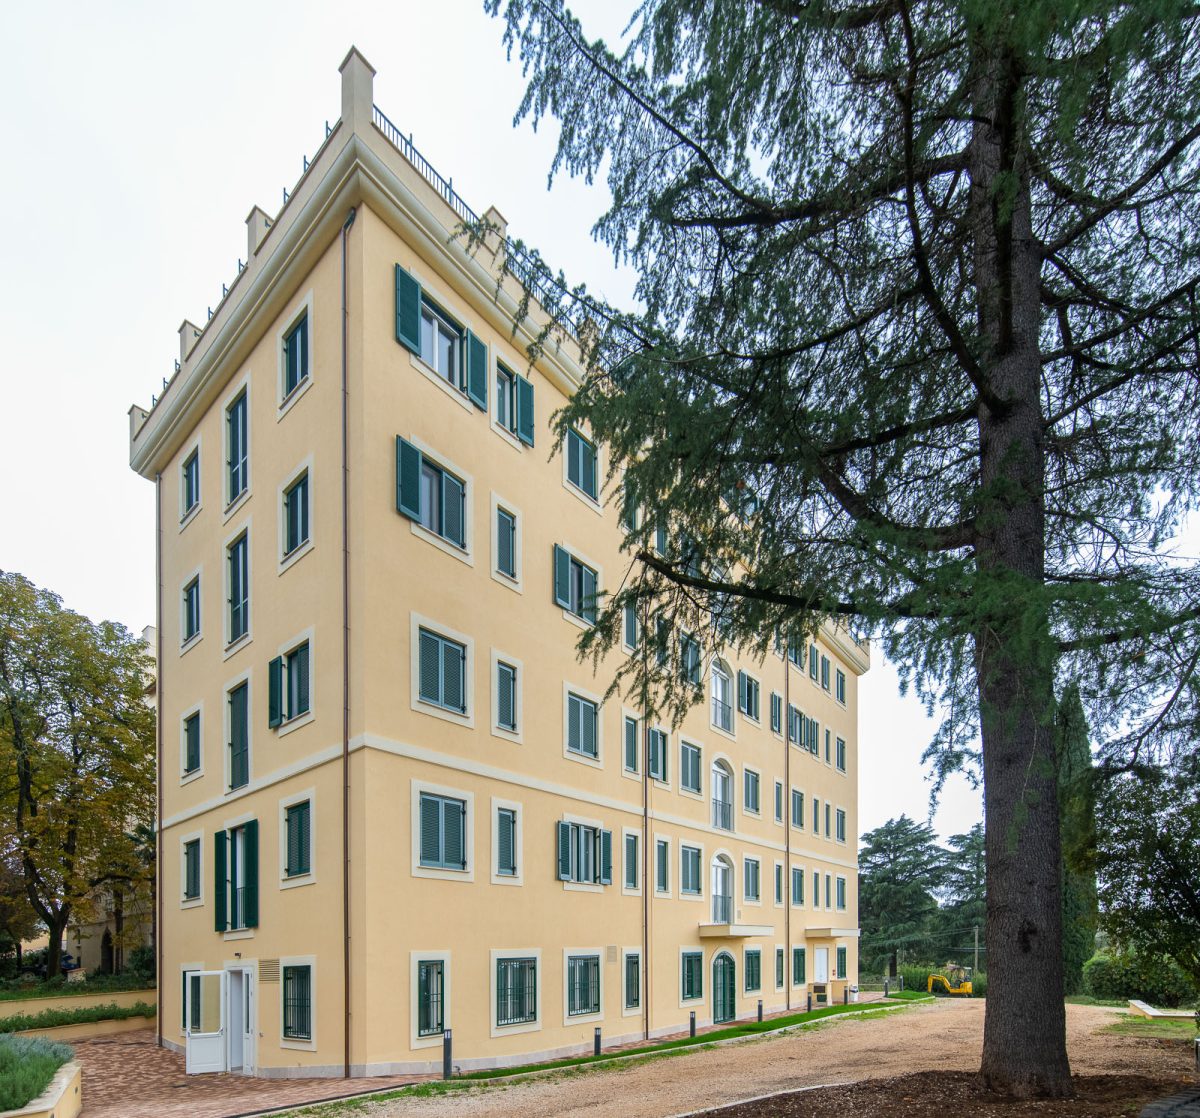 Il Neubau a seguito della ristrutturazione con demolizione e ricostruzione realizzata da Edilerica presso San Pastore a Gallicano nel Lazio